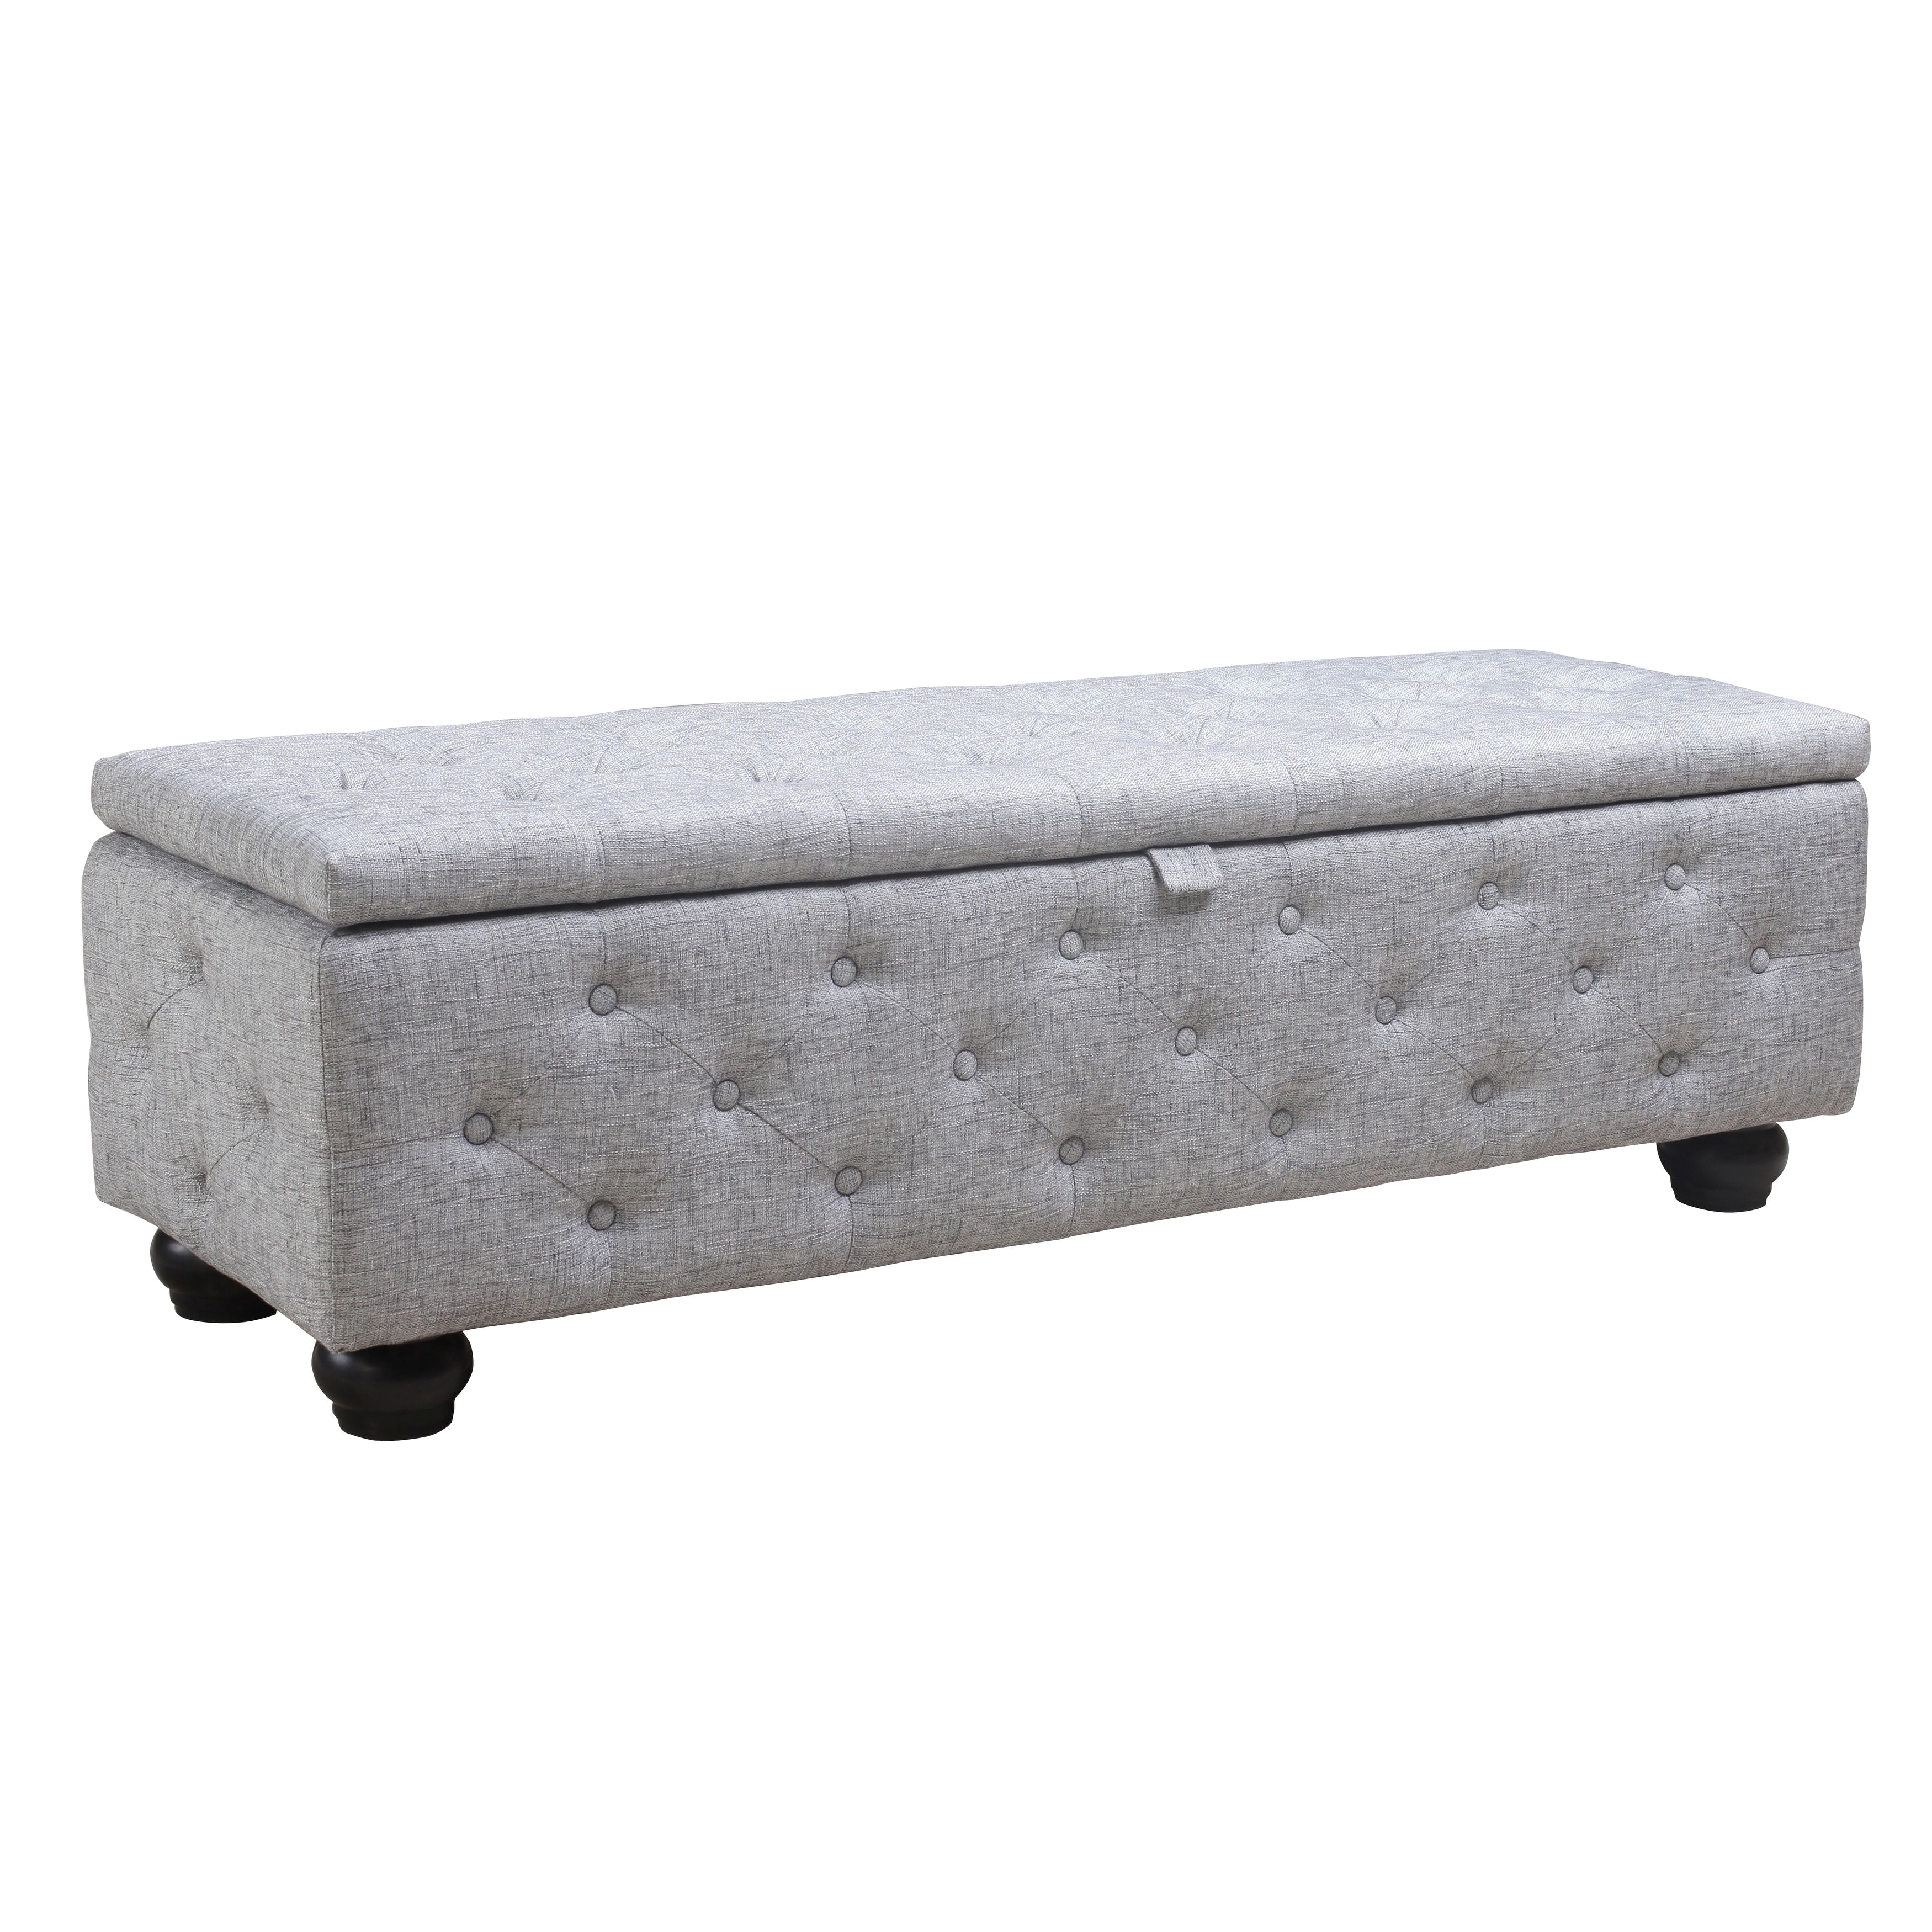 Aurelle Home Kora Grey Antique Upholstered Storage Ottoman Foam